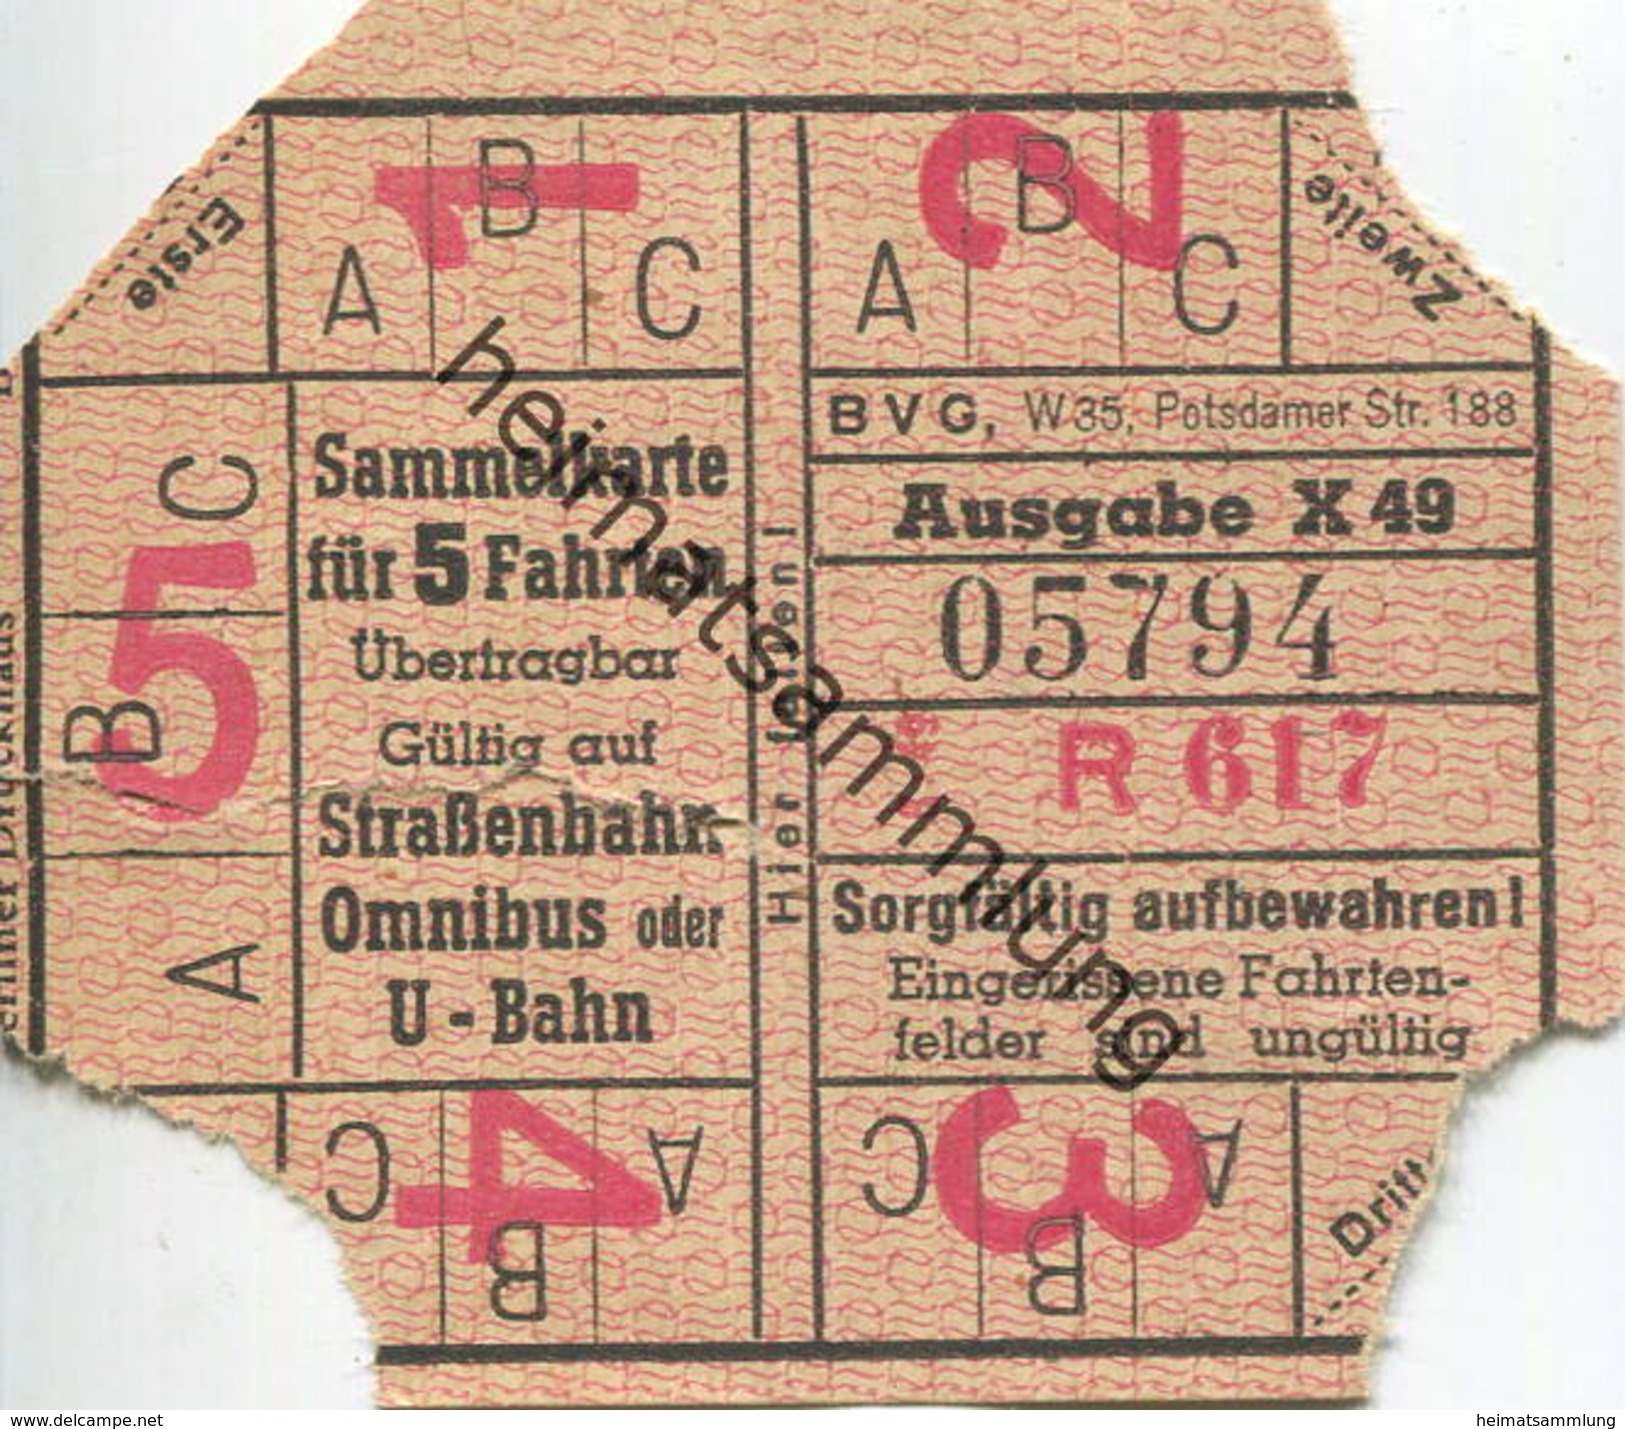 Deutschland - Berlin - BVG - Sammelkarte Für 5 Fahrten 1949 - Gültig Auf Strassenbahn Omnibus Oder U-Bahn - Europe